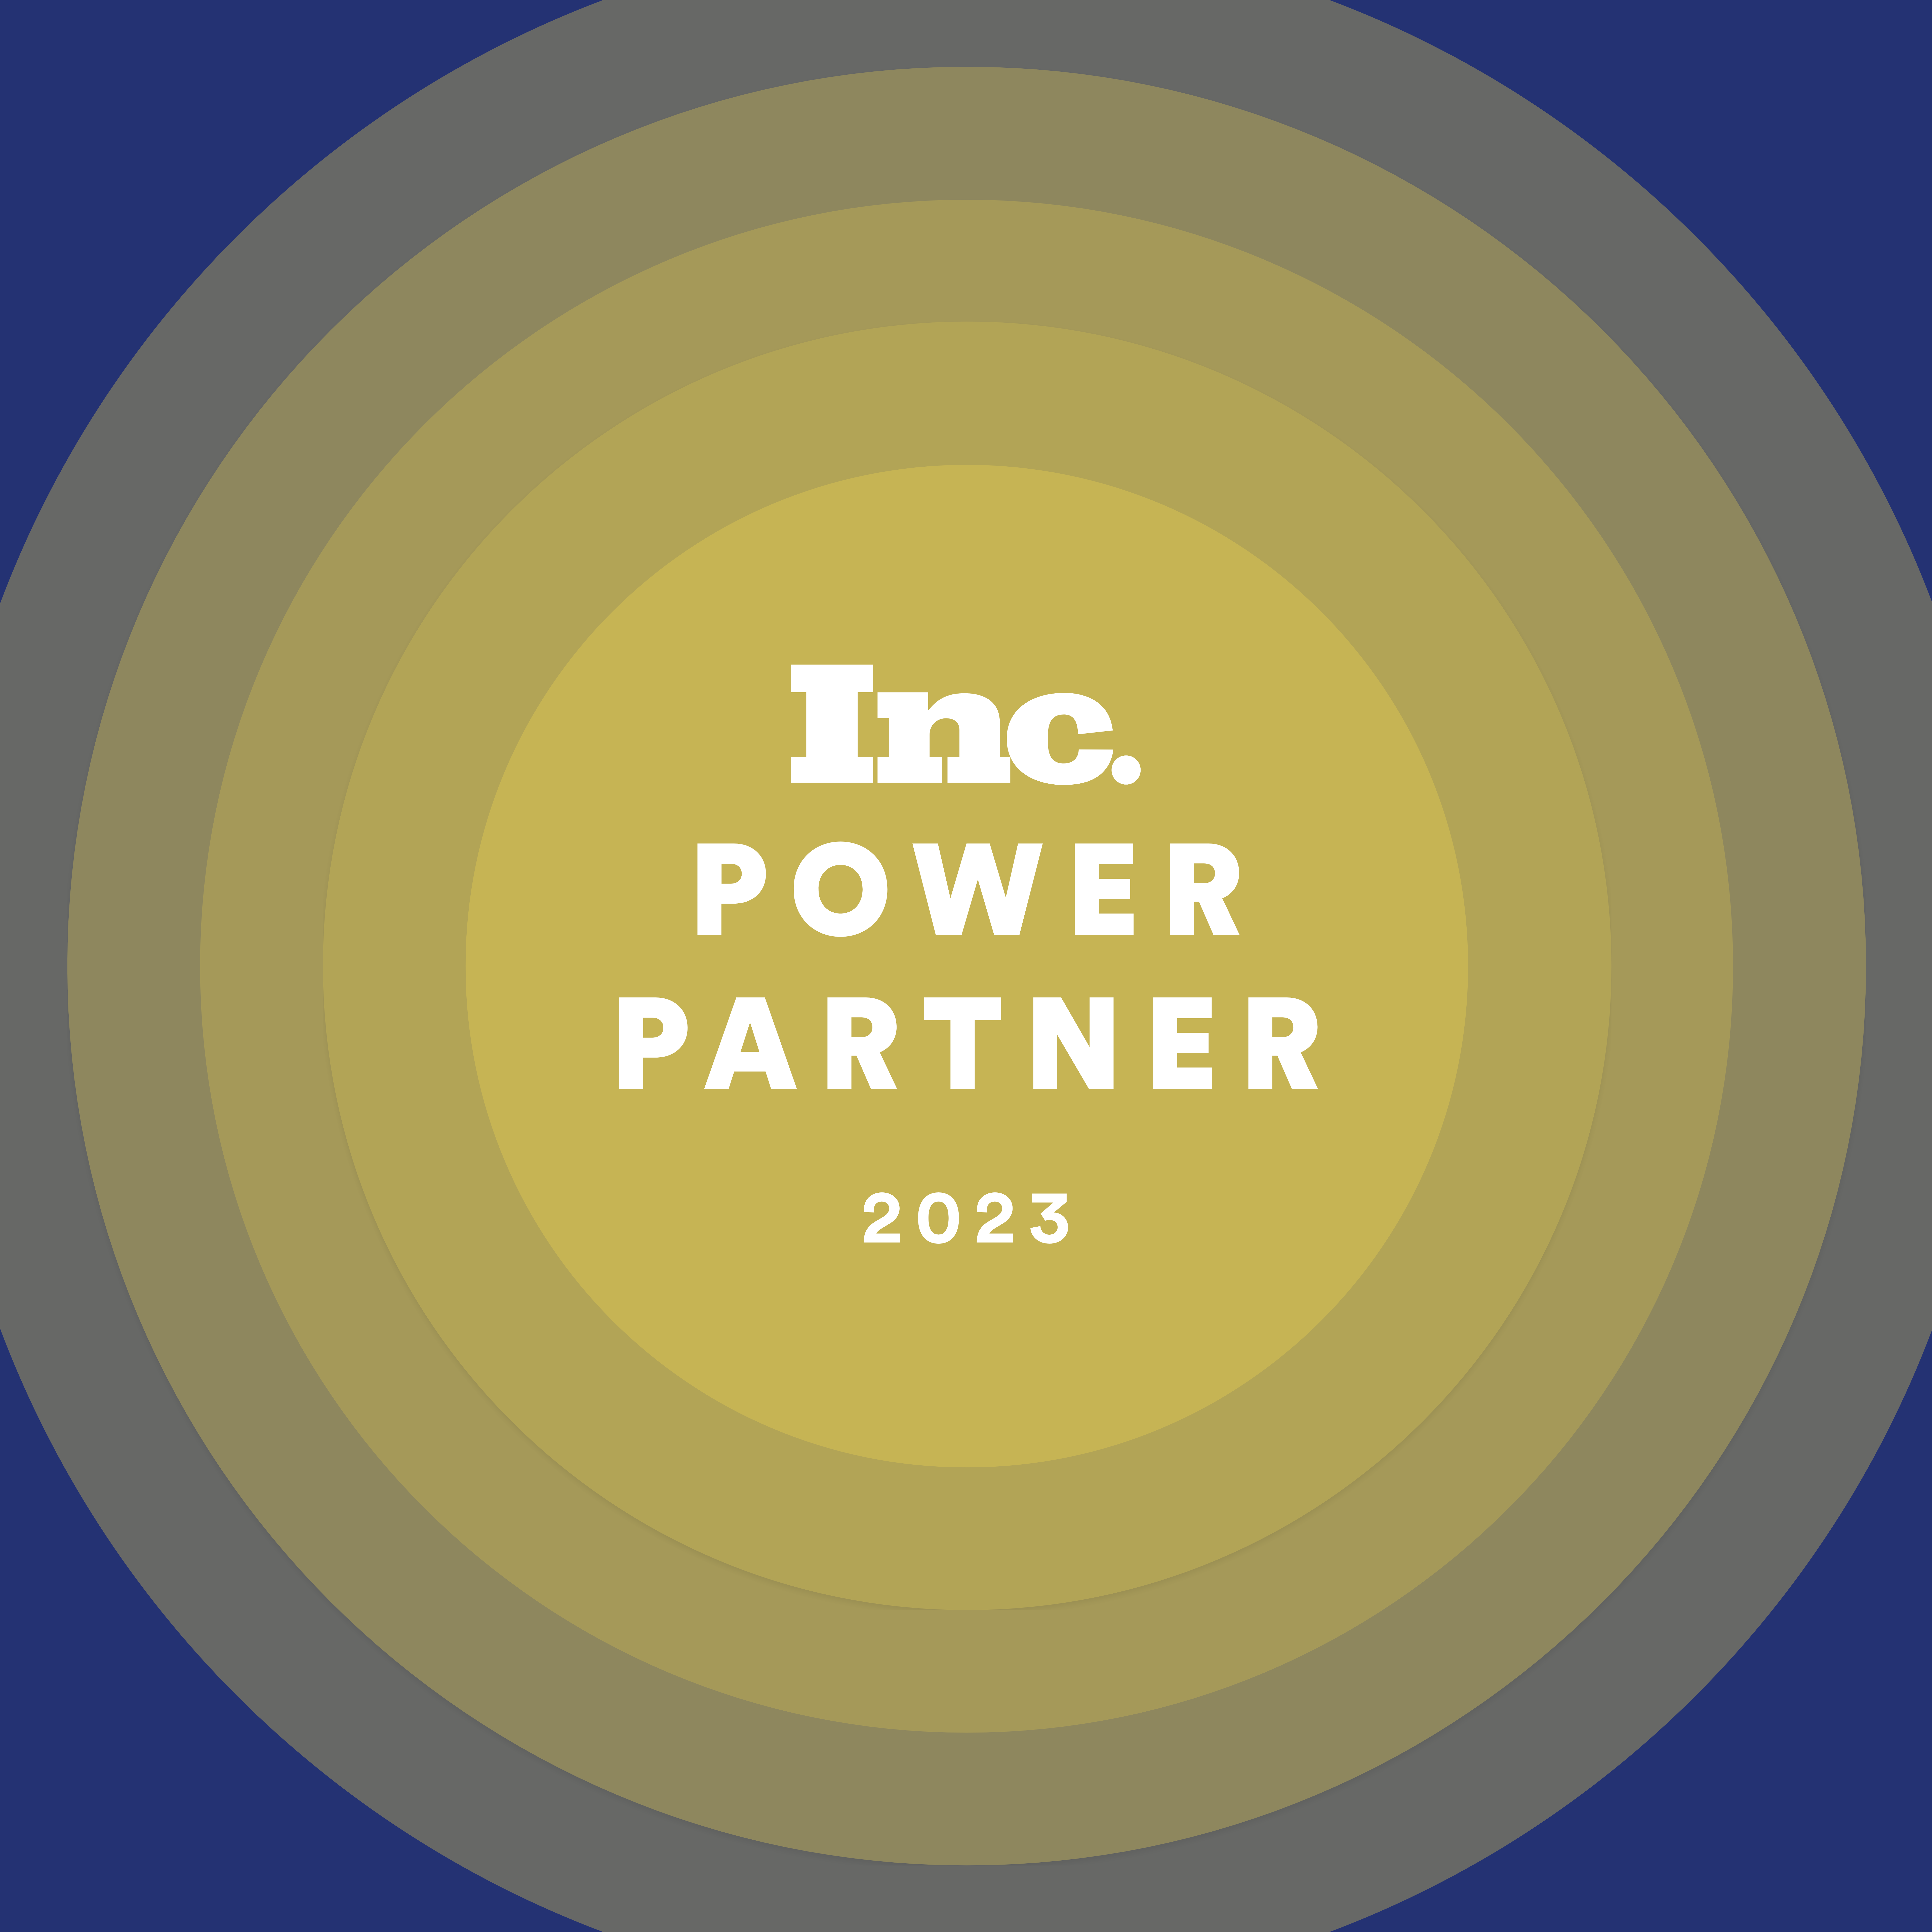 SmartCommerce Named to Inc.’s Power Partner Awards 2023